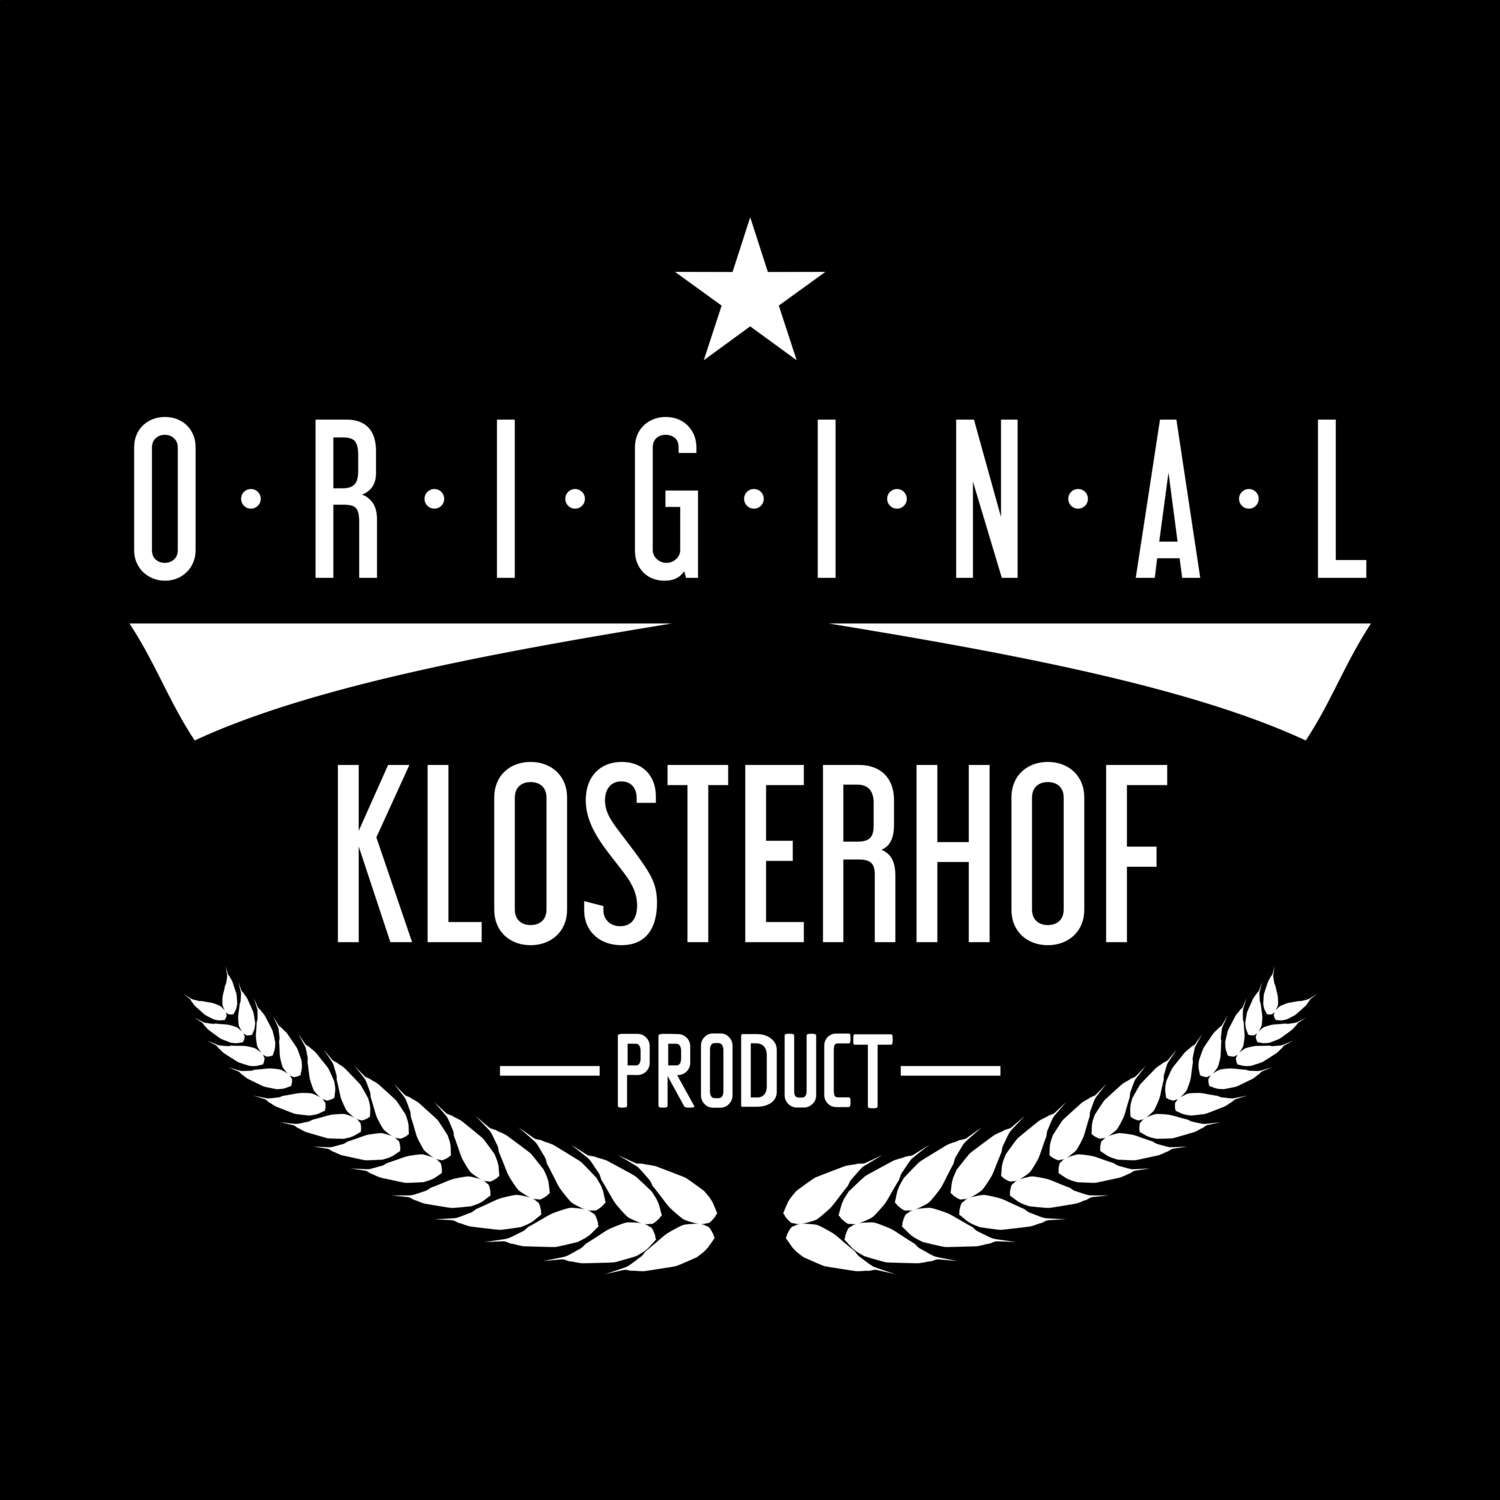 Klosterhof T-Shirt »Original Product«